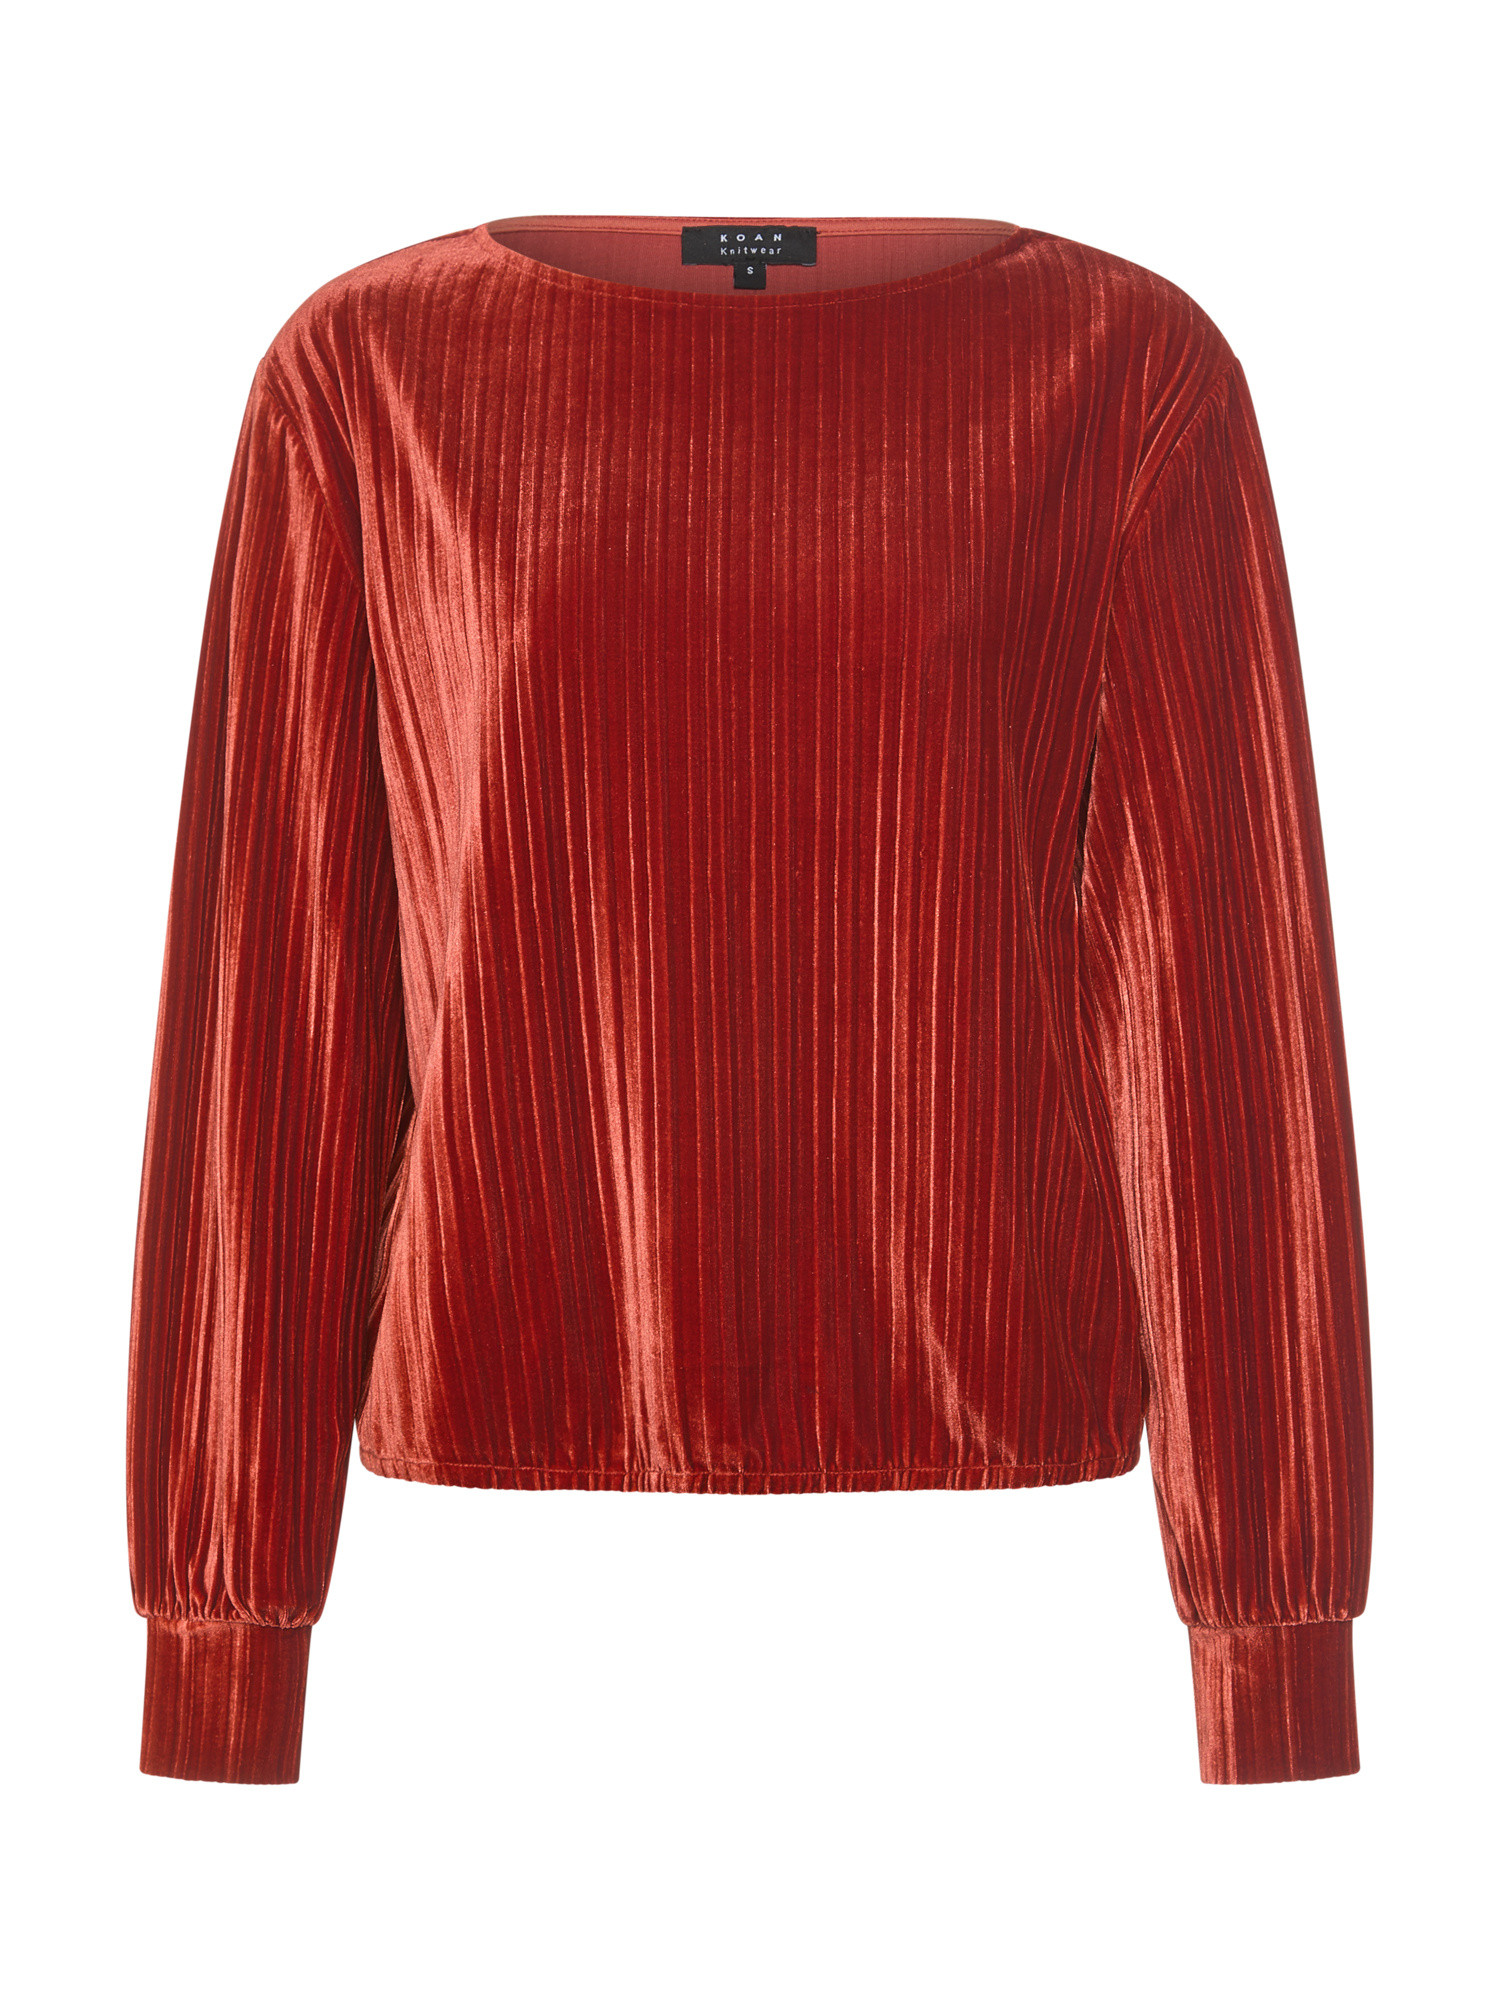 Koan Collection Бархатный свитер с плиссированным эффектом, бежевый